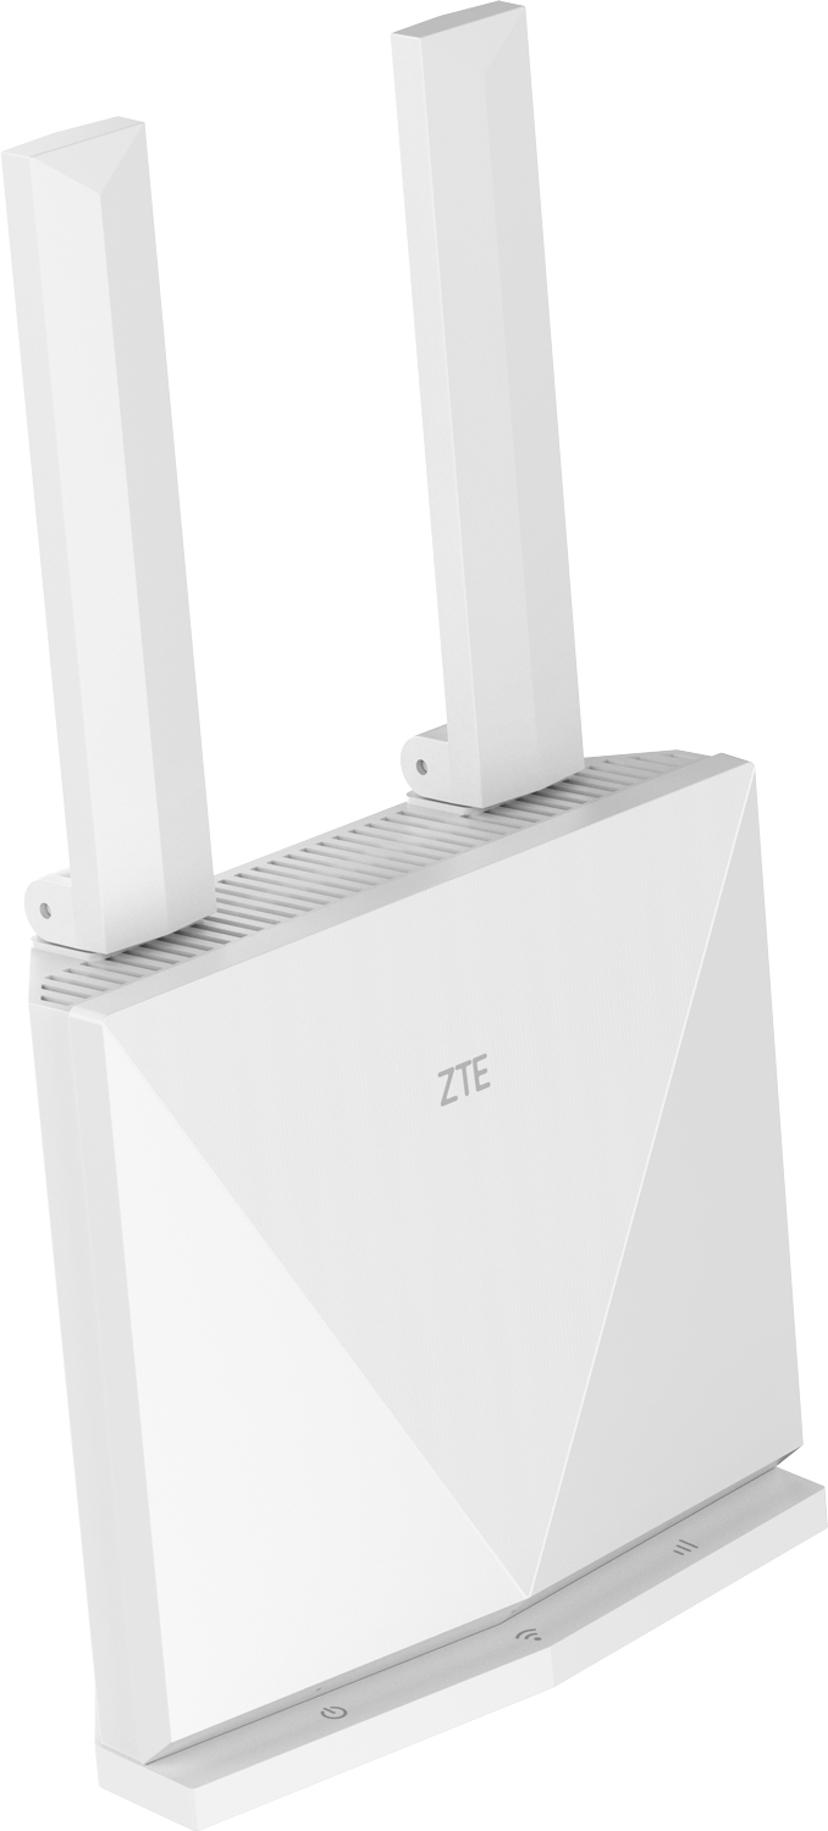 ZTE K10 4G Wireless Router